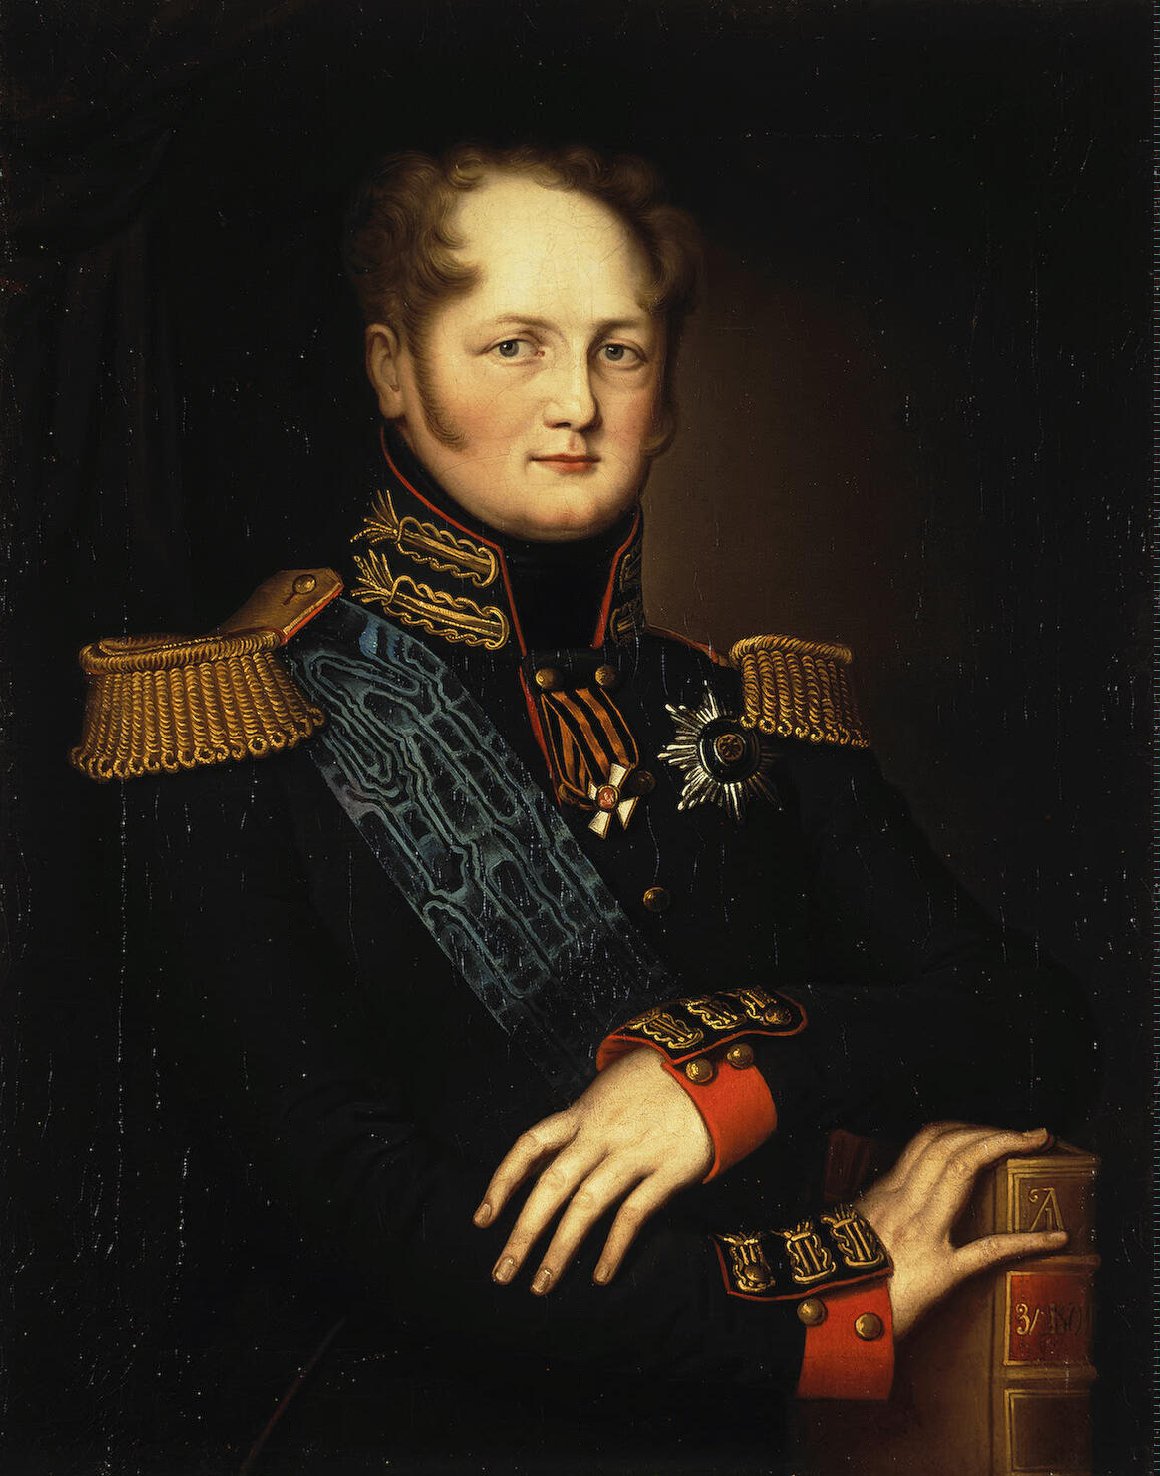 Retrato del zar Alejandro I de Rusia (1801-1825), el promotor de la formación de la Santa Alianza.